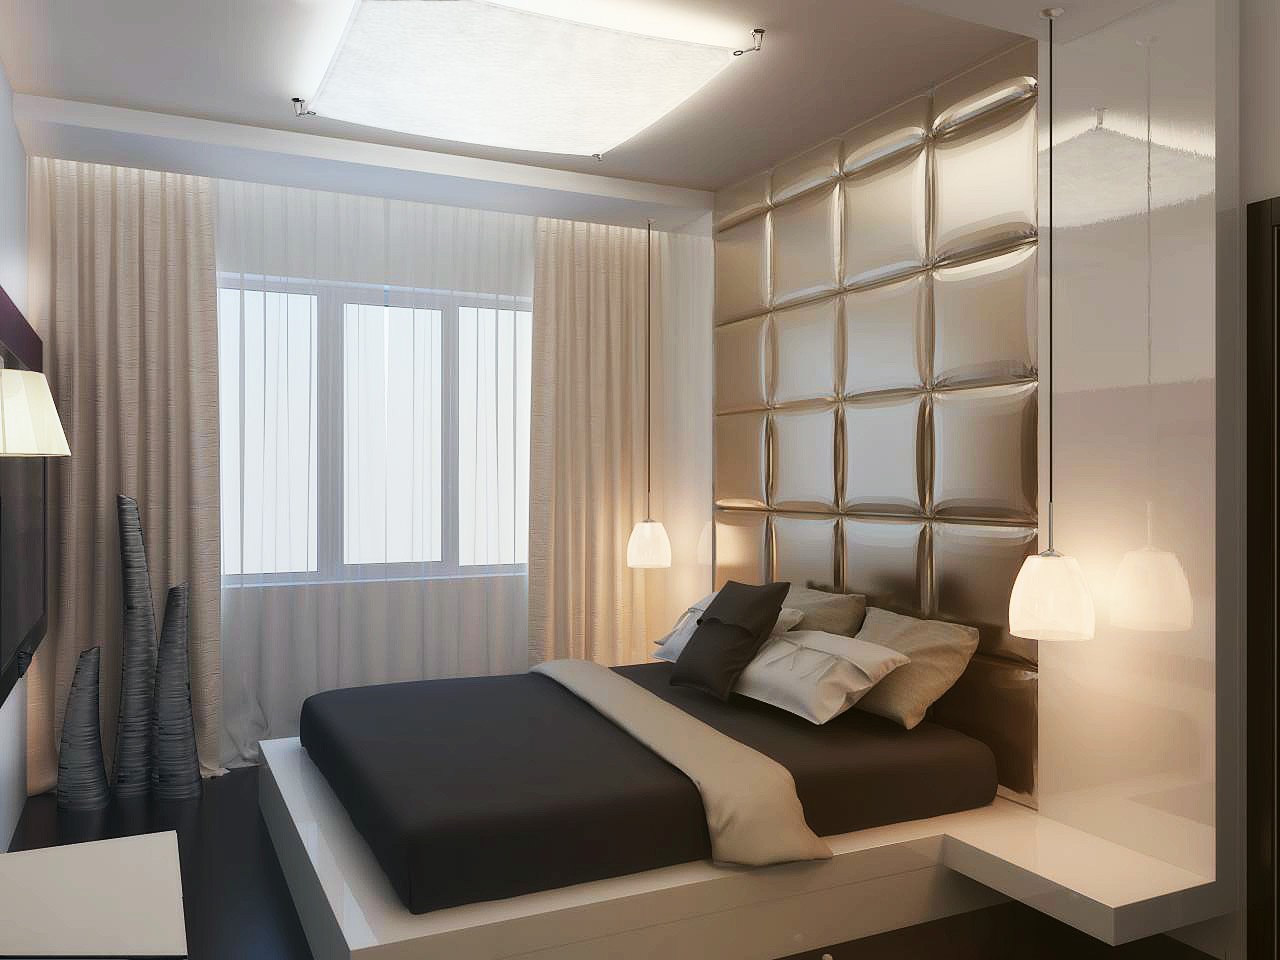 Дизайн спальни 18 кв. м. с рекомендациями стиля и декорирования